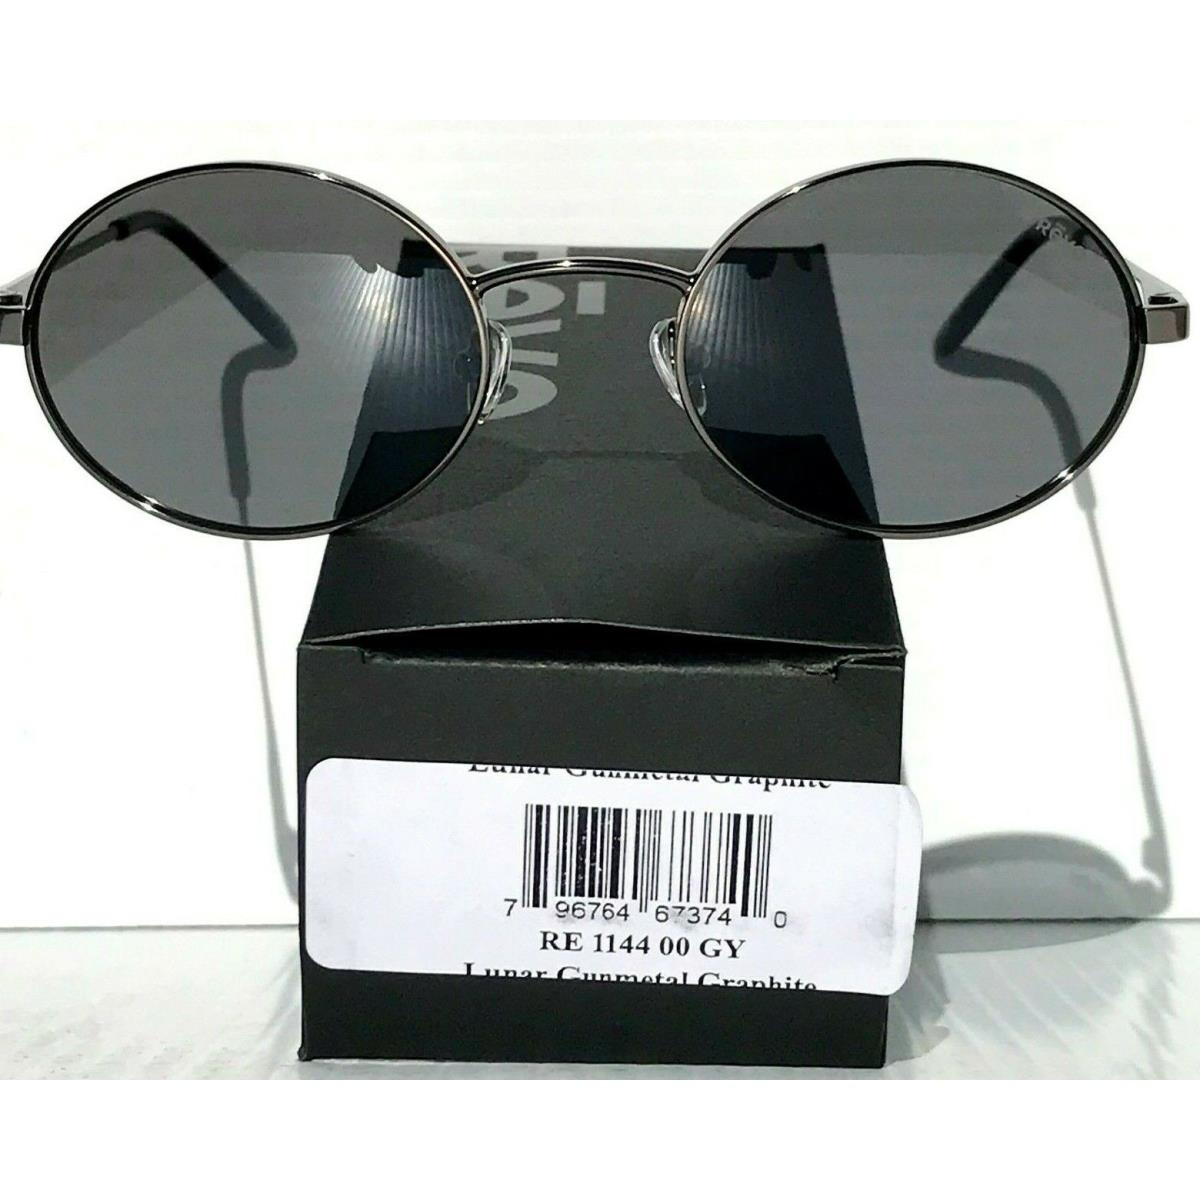 Revo sunglasses LUNAR - Silver Frame, Gray Lens